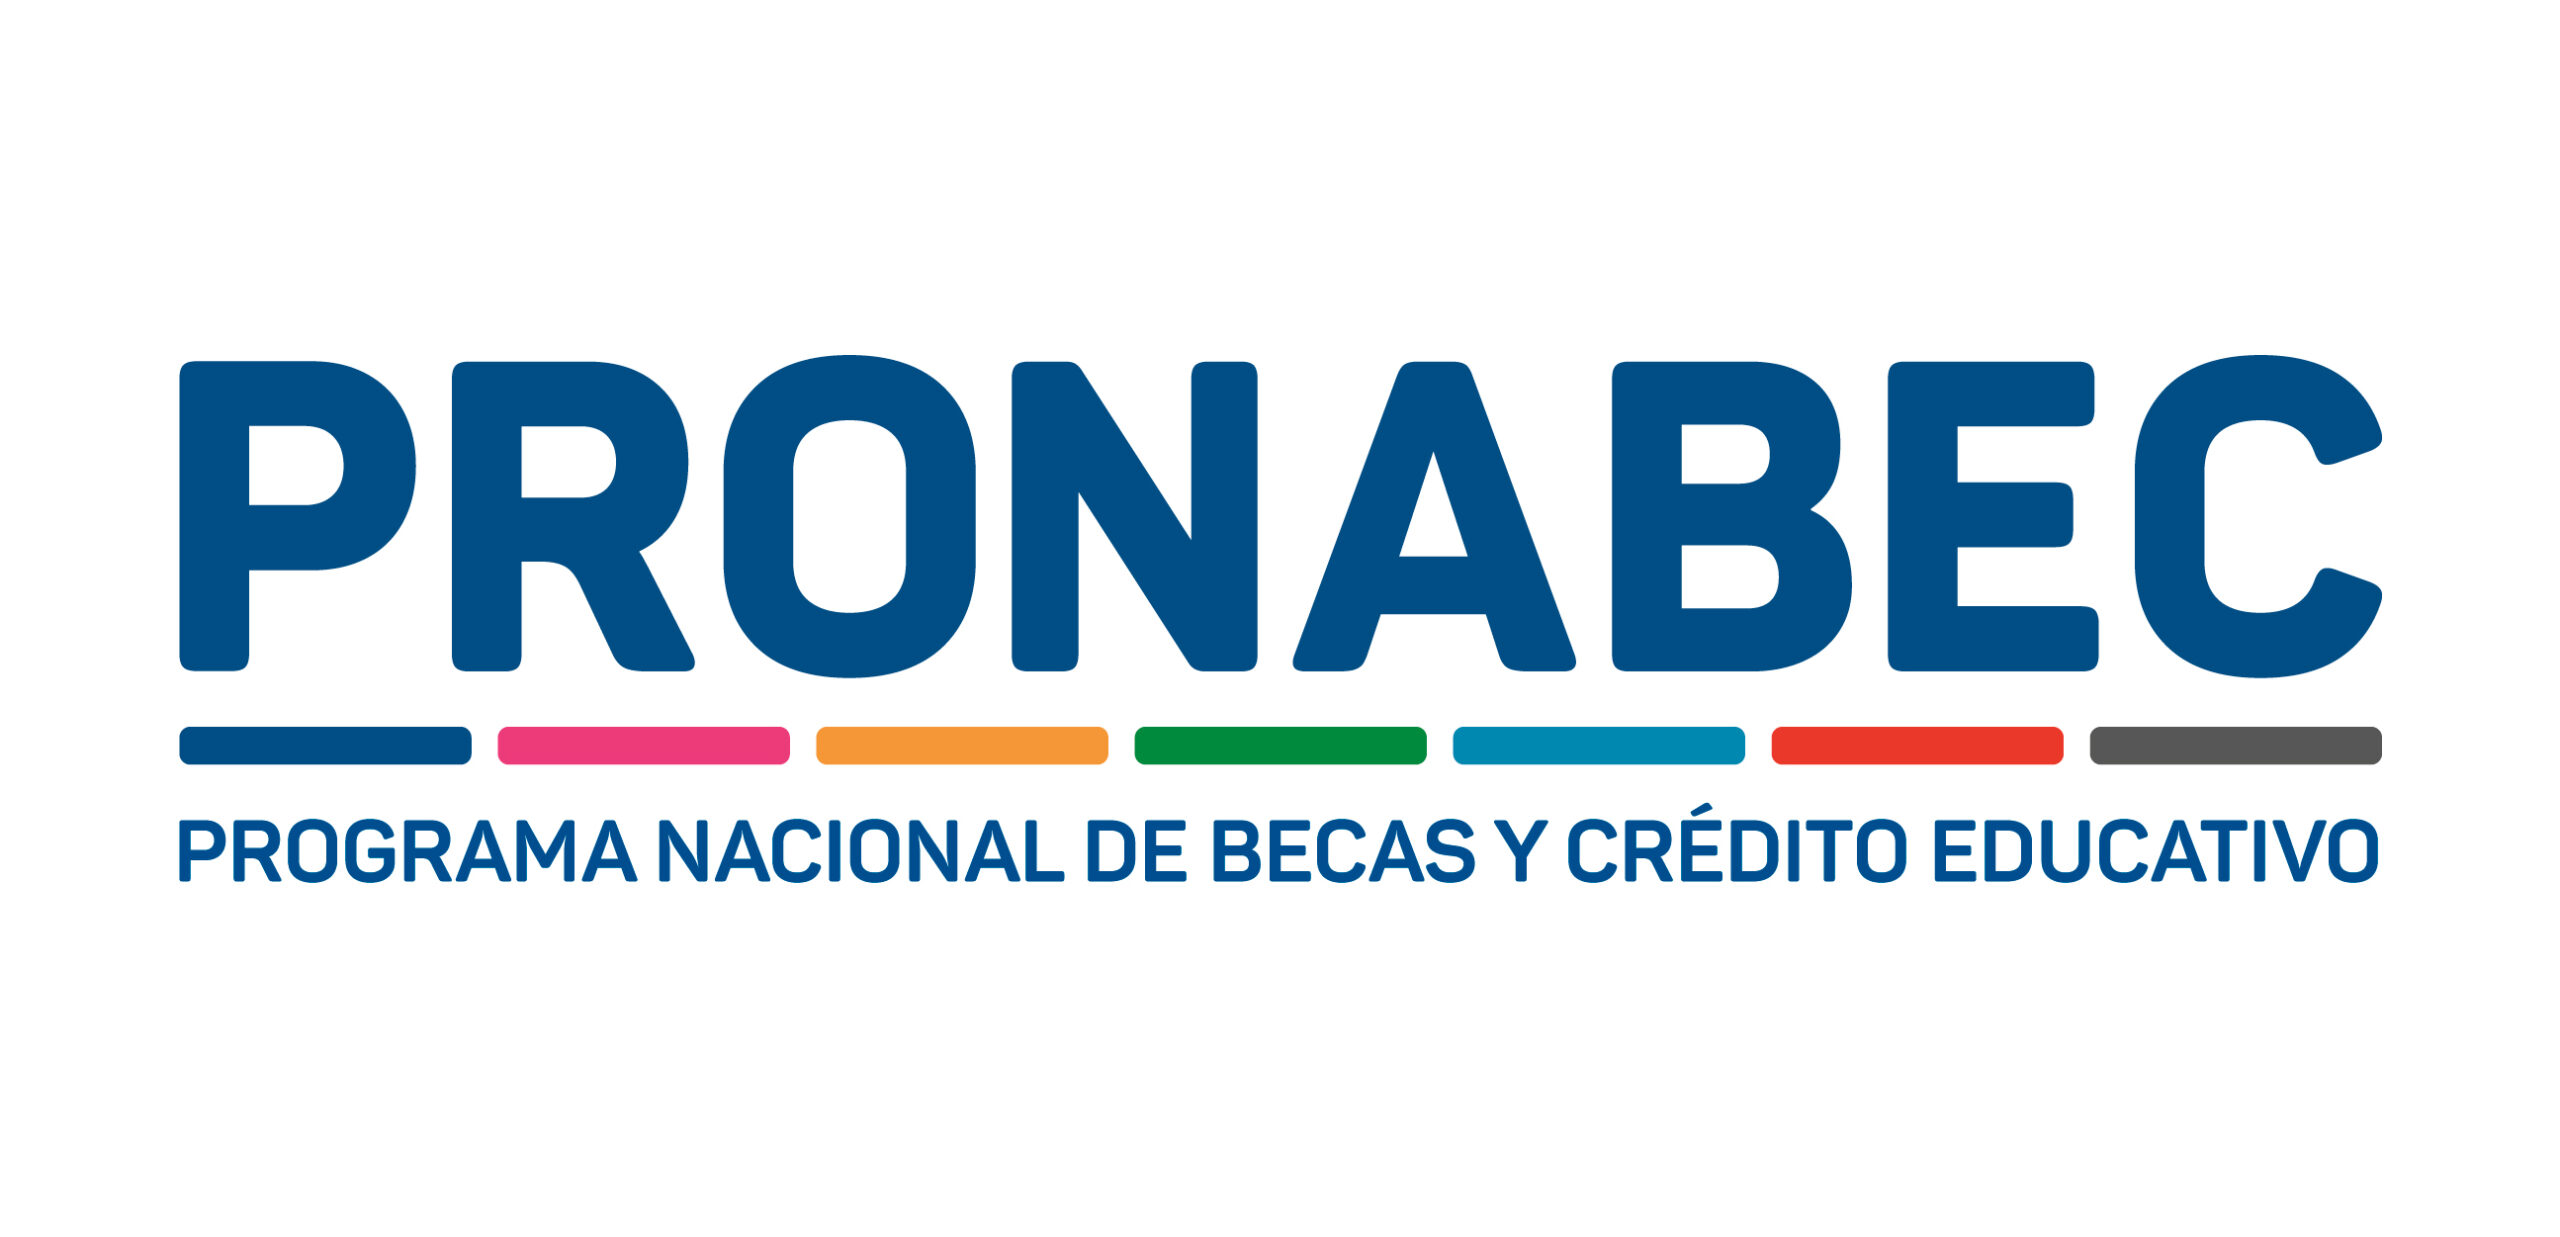 Programa Nacional de Becas y Crédito Educativo (Pronabec)